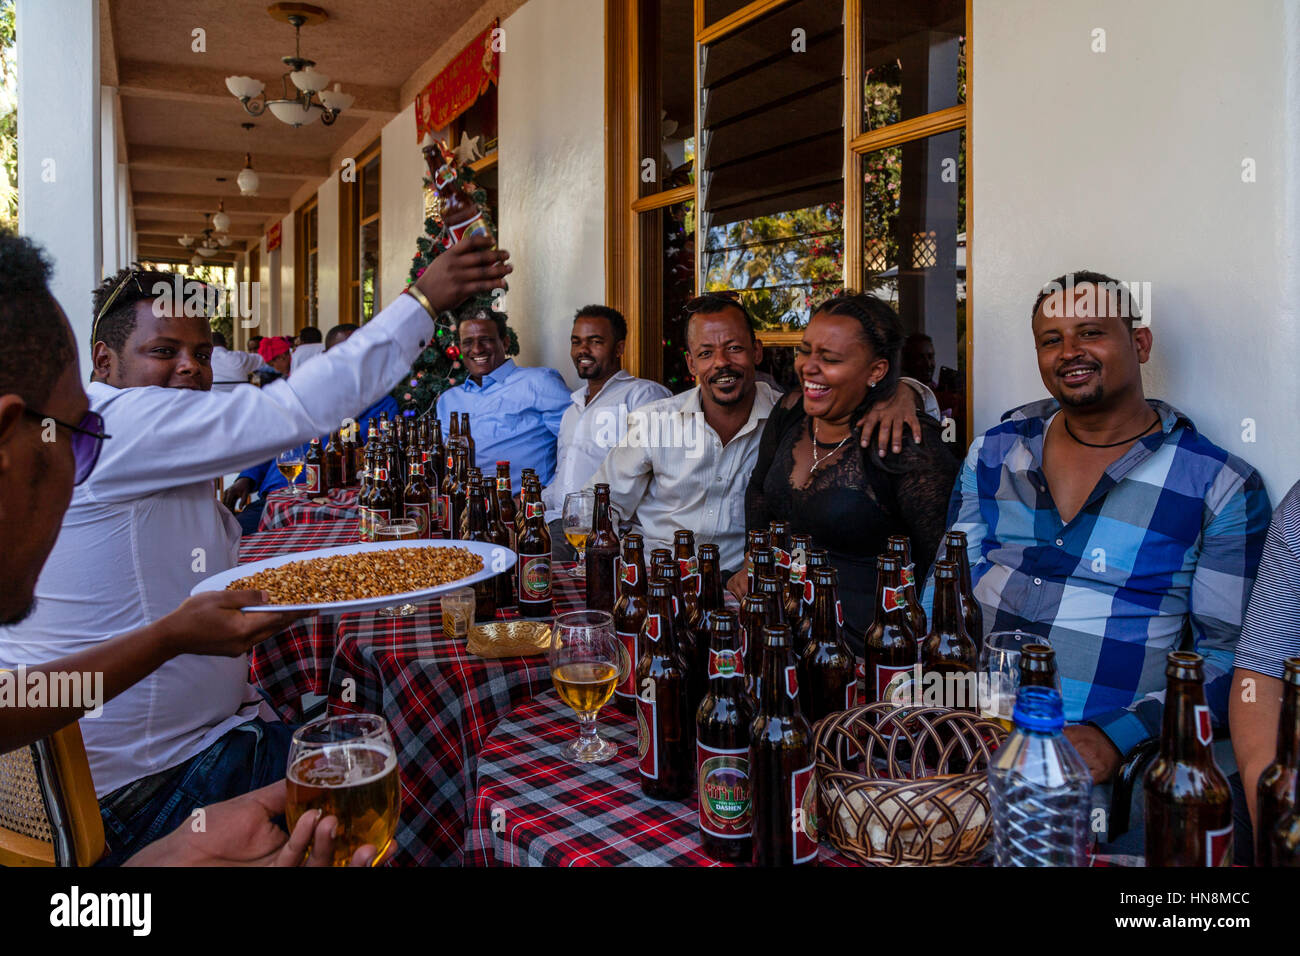 Eine Hochzeit feiern, Gäste bei einer Hochzeit, trinken Bier, Lake Ziway Ziway, Äthiopien Stockfoto